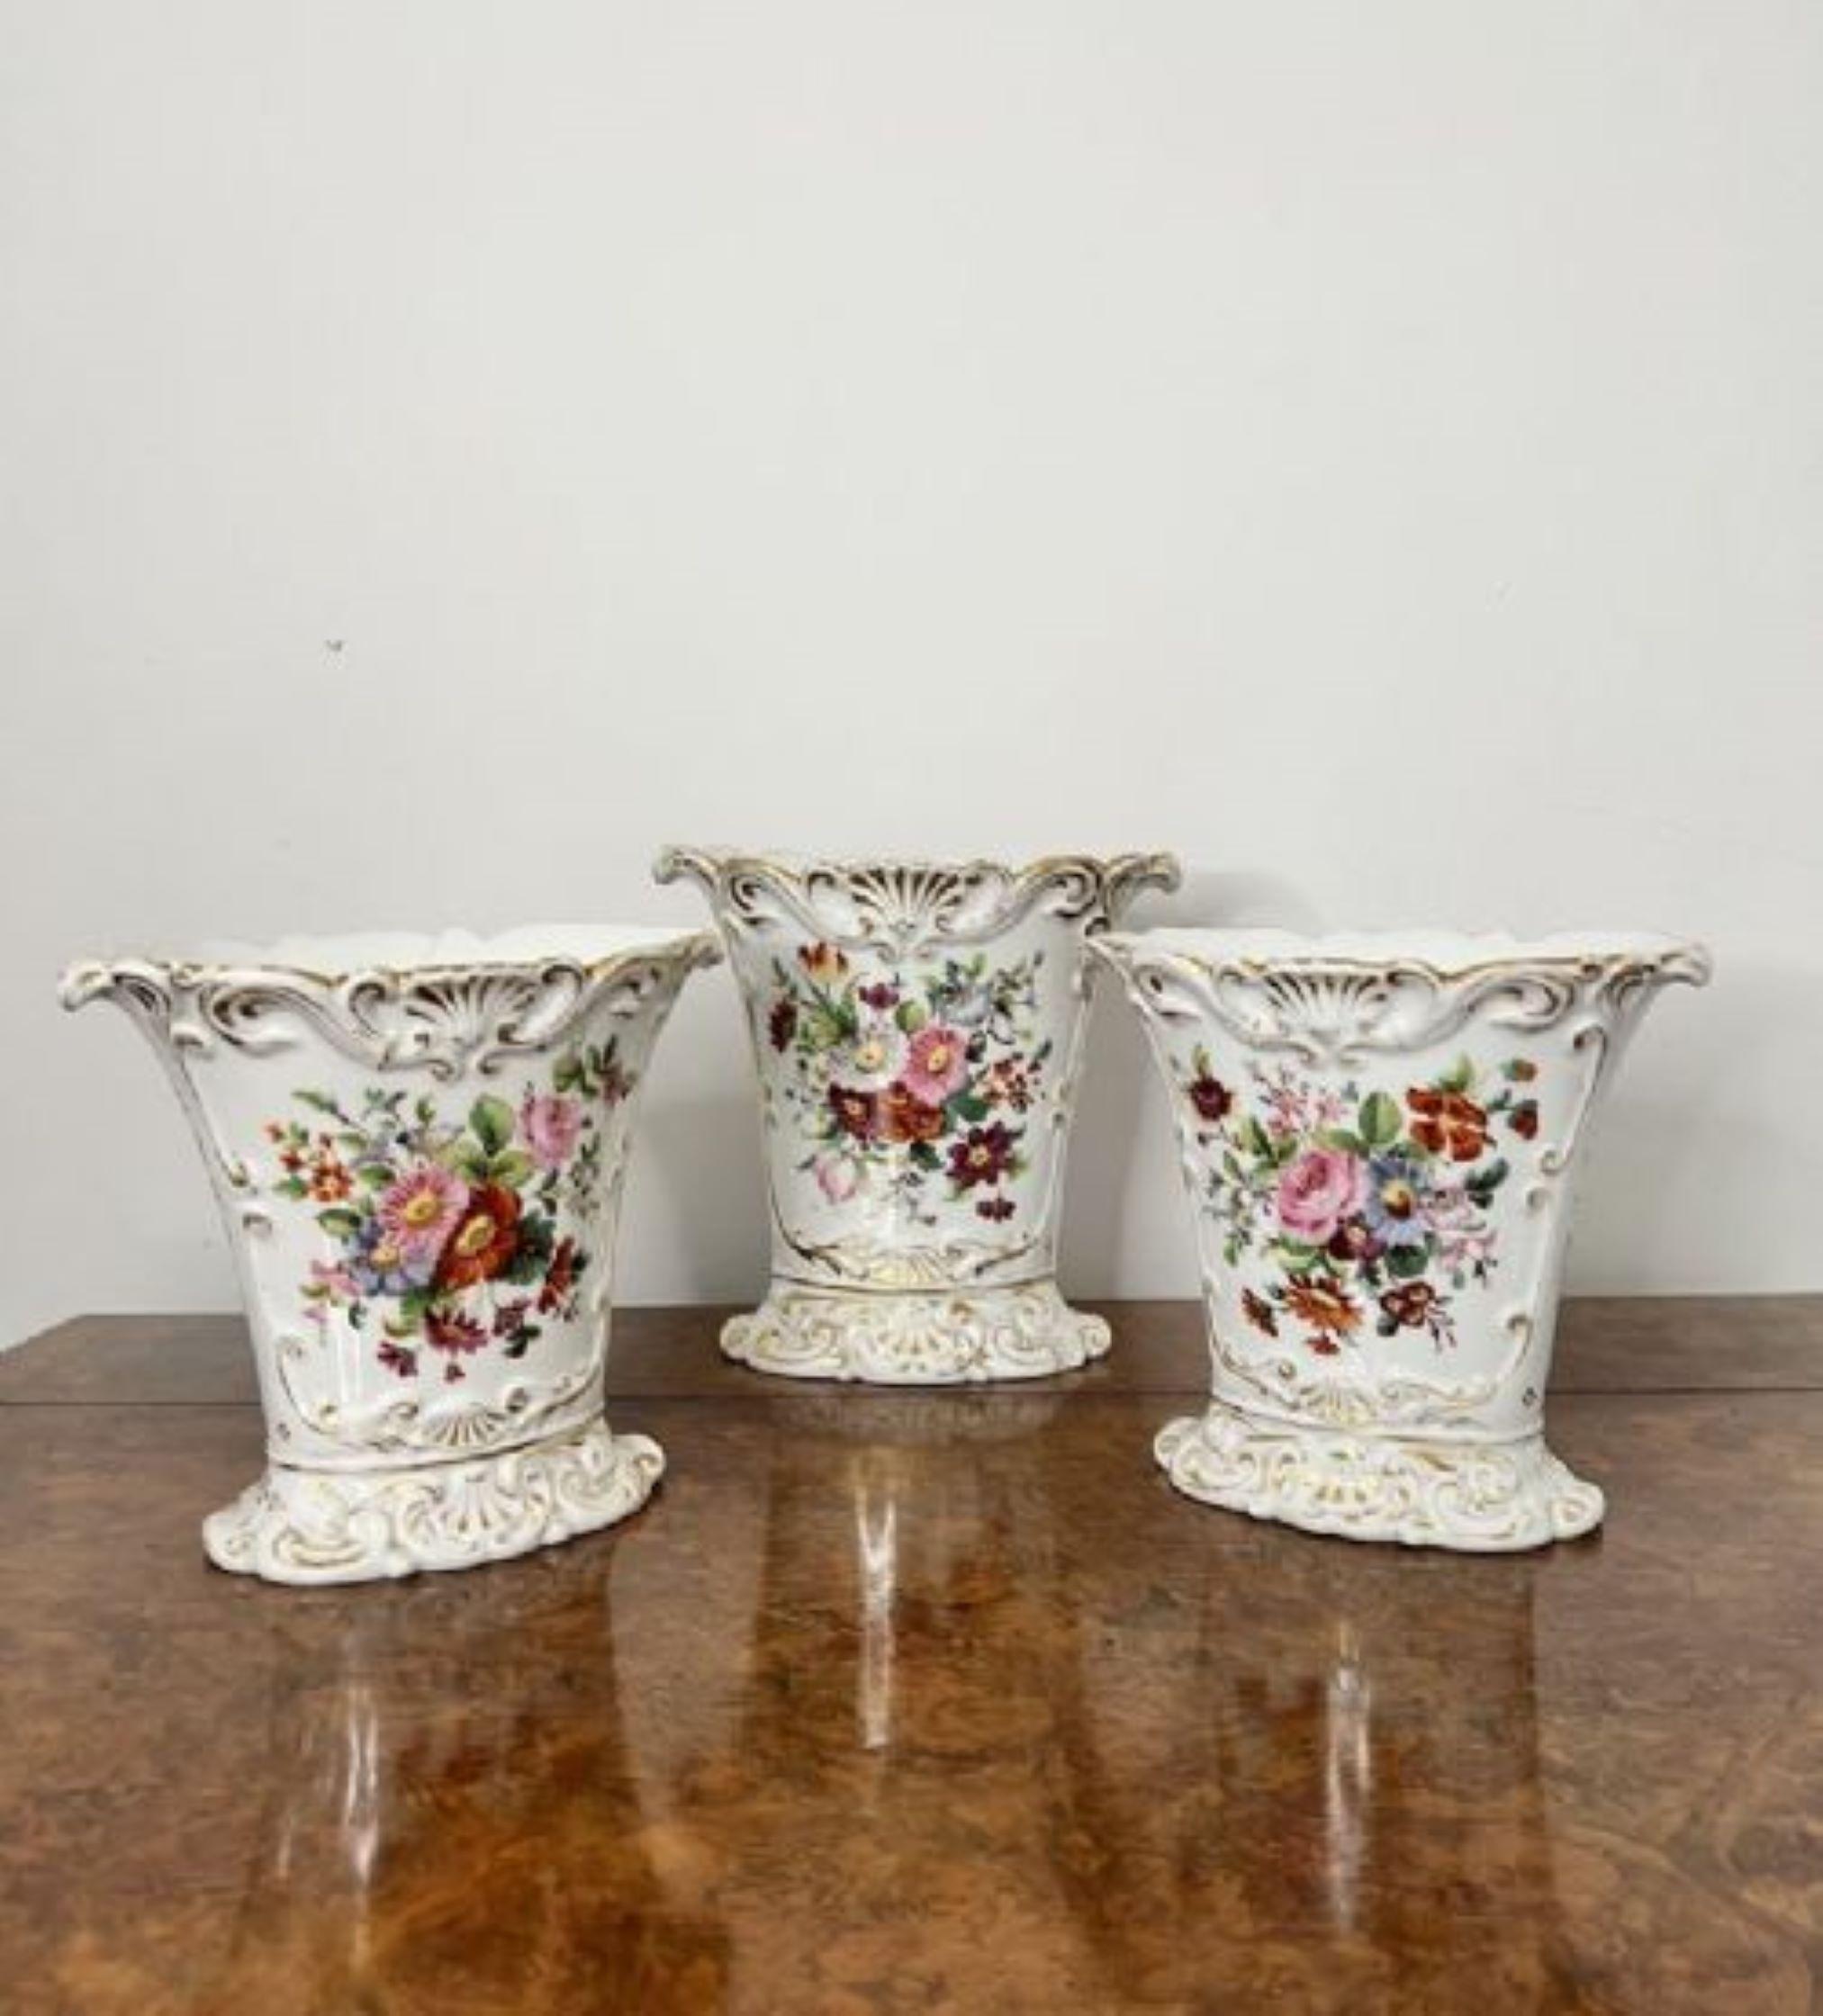 Fantastische Qualität Garnitur von drei 19. Jahrhundert Französisch Vasen mit einer fantastischen Garnitur von drei Französisch Vasen, mit geriffelten geformten Körper mit Blumendekoration in fabelhaften blauen, rosa, grün und orange Farben umgeben